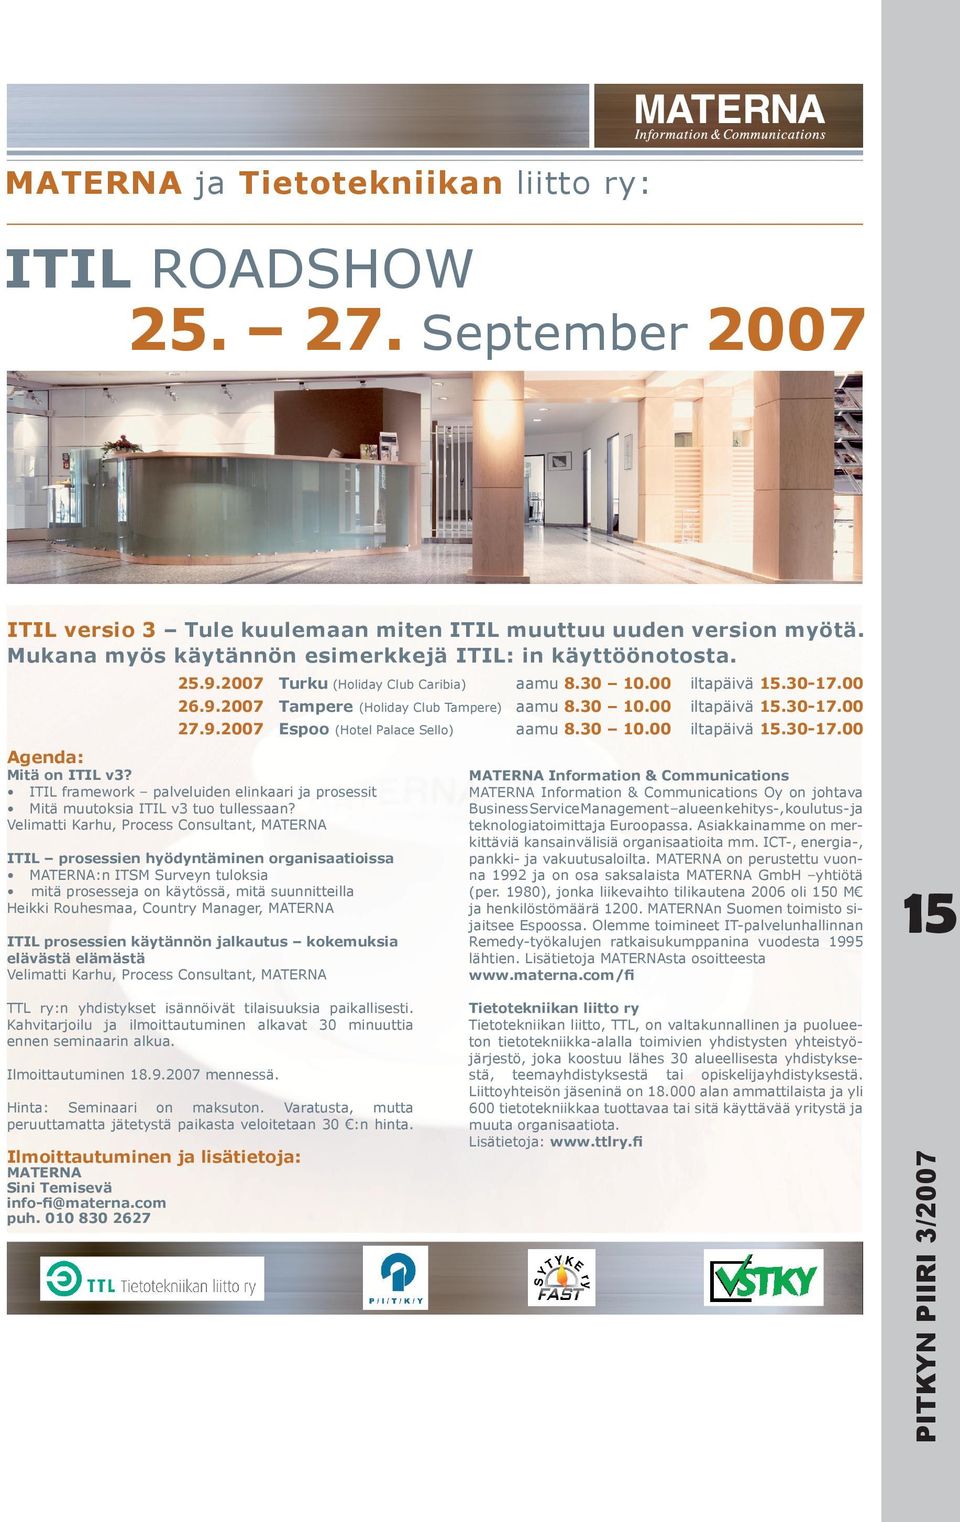 00 iltapäivä 15.30-17.00 27.9.2007 Espoo iltapäivä 15.30-17.00 Mitä on ITIL v3? ITIL framework palveluiden elinkaari ja prosessit Mitä muutoksia ITIL v3 tuo tullessaan?